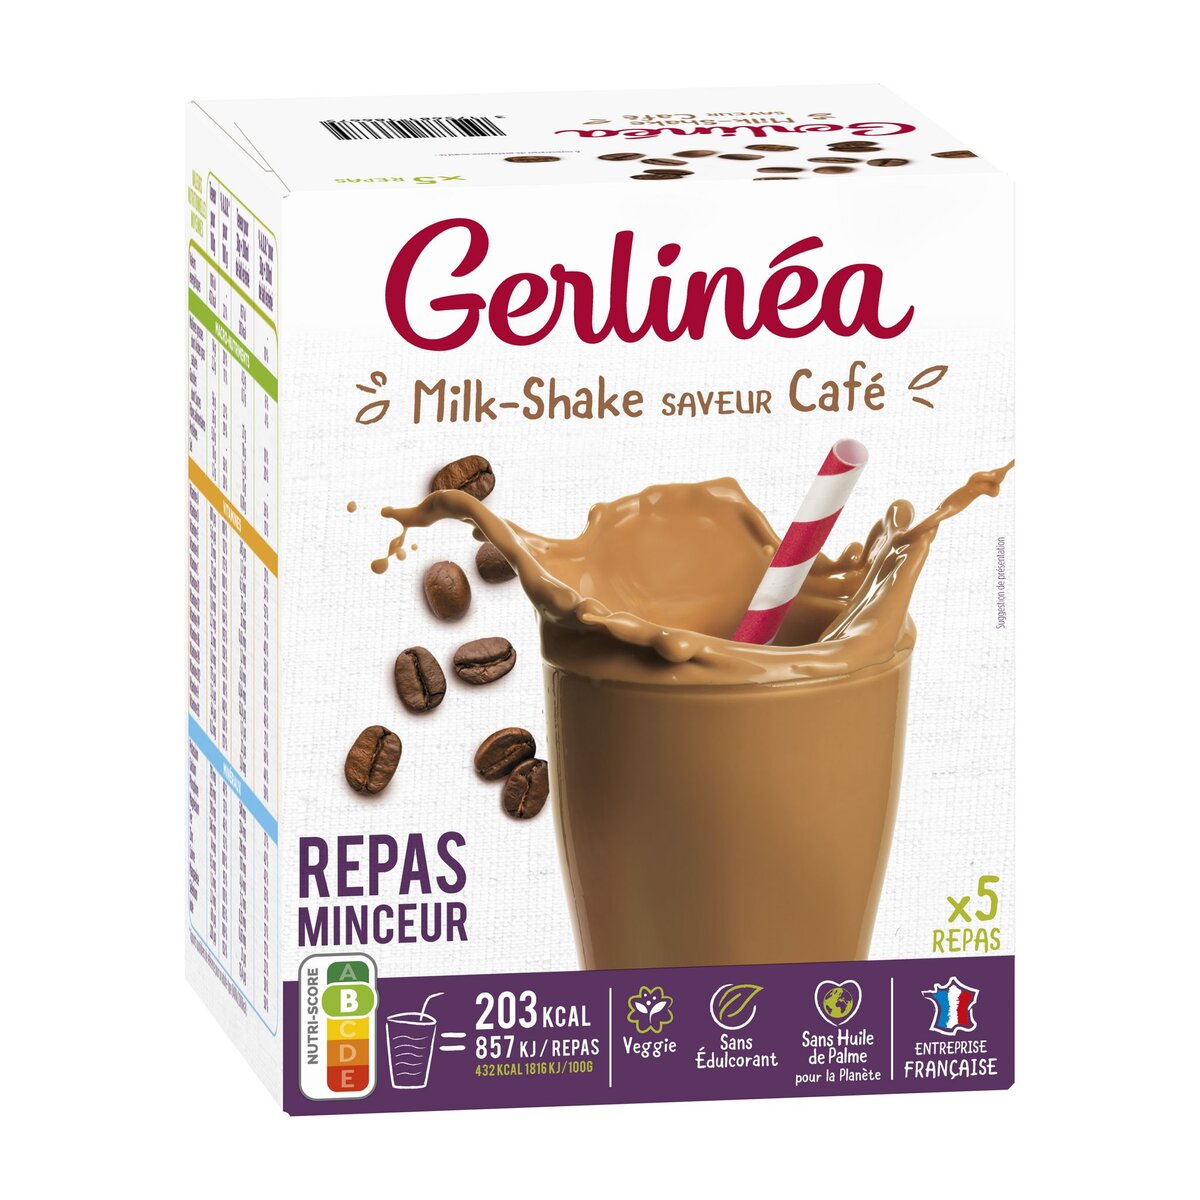 GERLINEA Repas minceur milk shake saveur café 150g pas cher